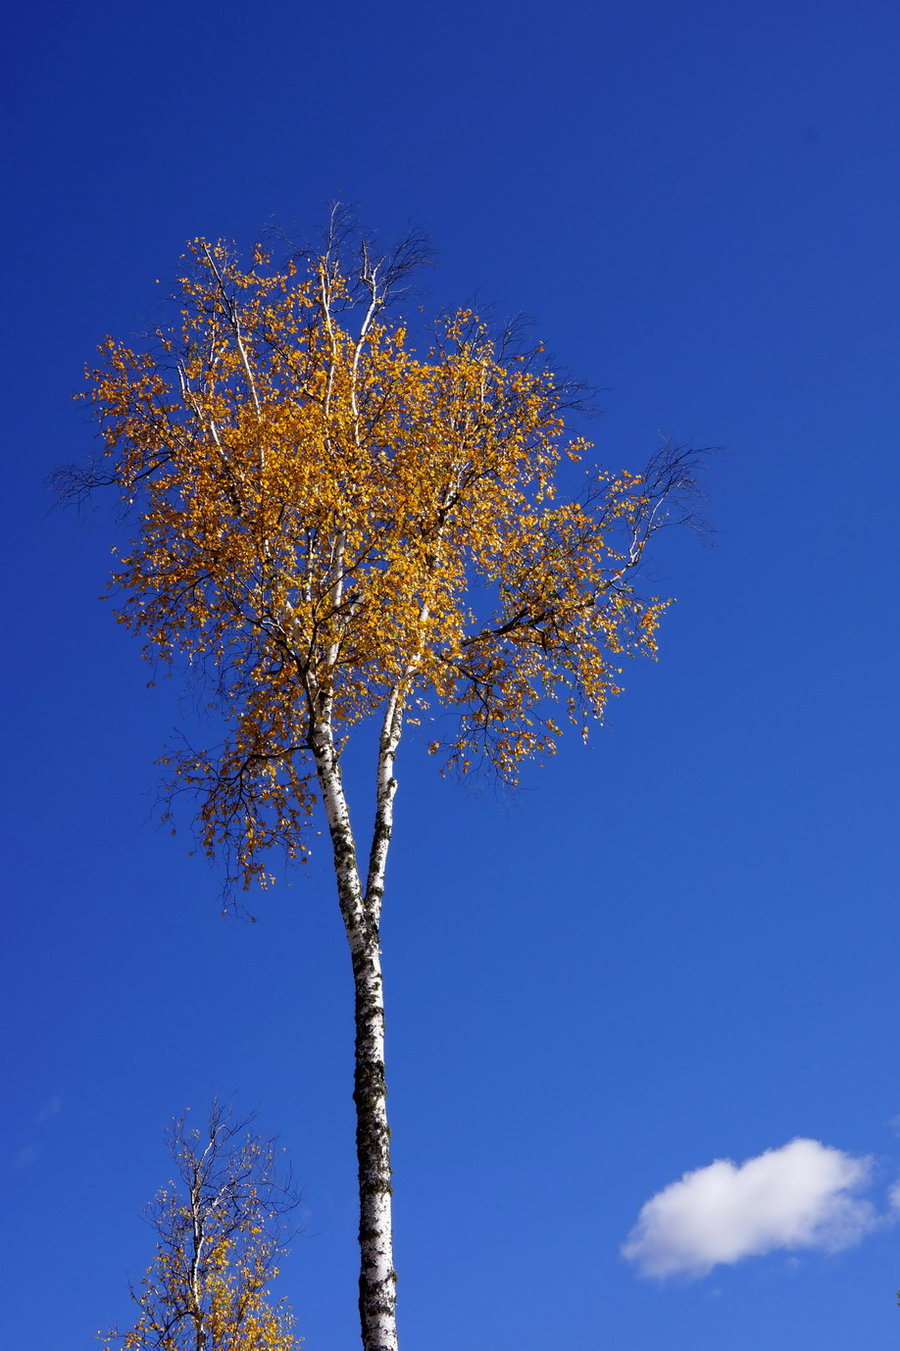 优雅的白桦树亭亭玉立,洁白的树干佩着迎风摇曳的金色叶子,美在眼里醉